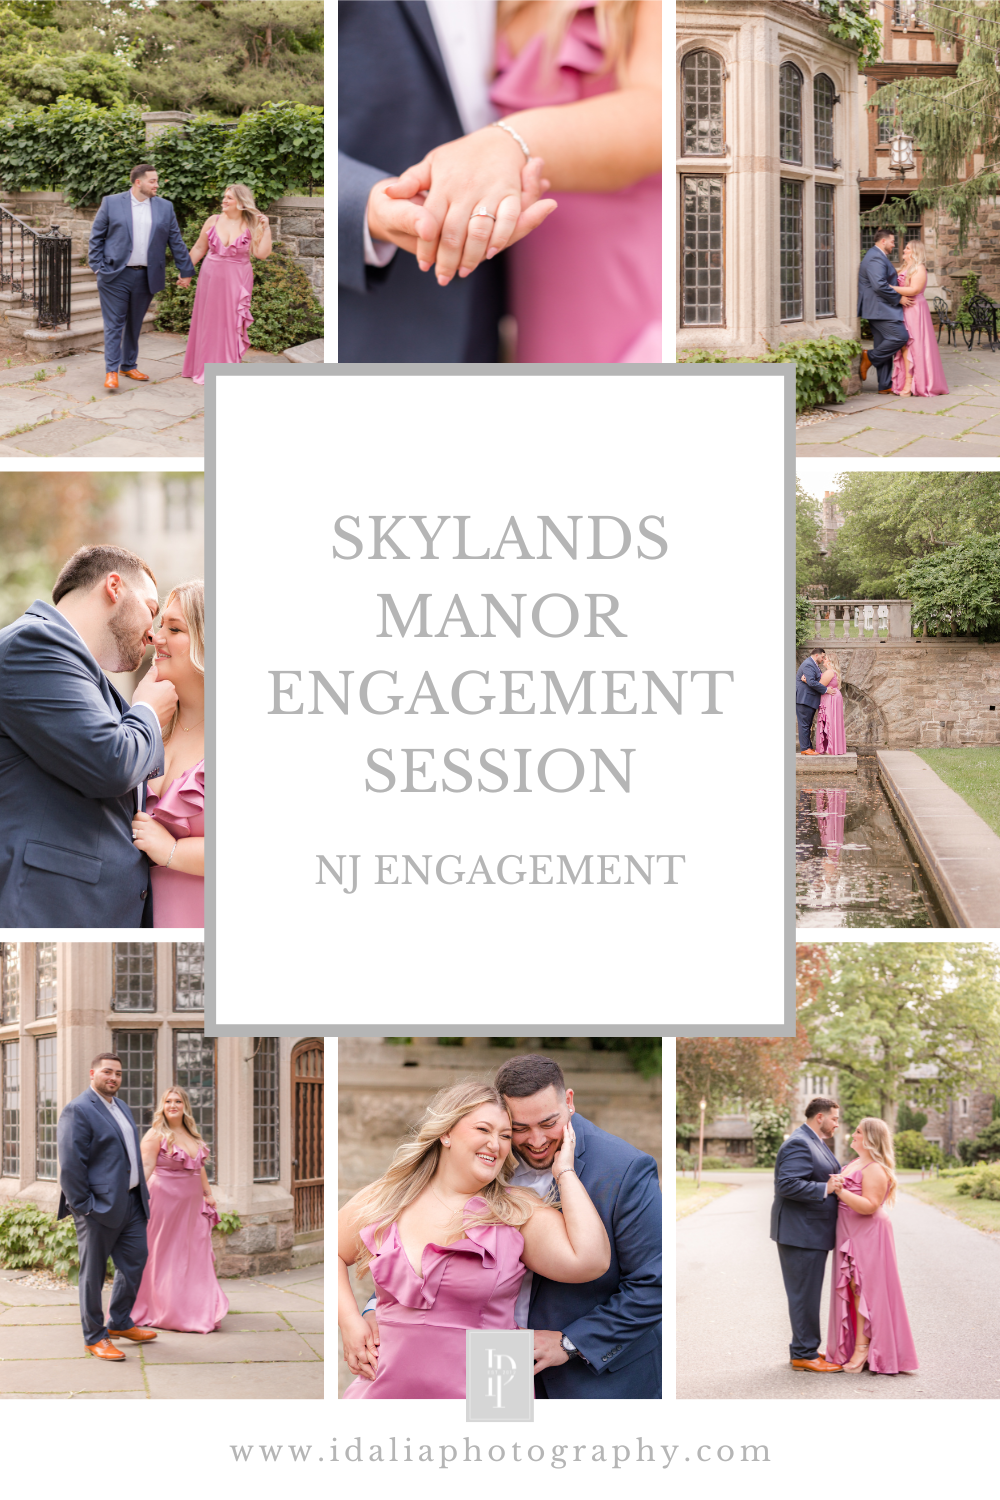 Summertime Skylands Manor engagement session with NJ wedding photographer Idalia Photography